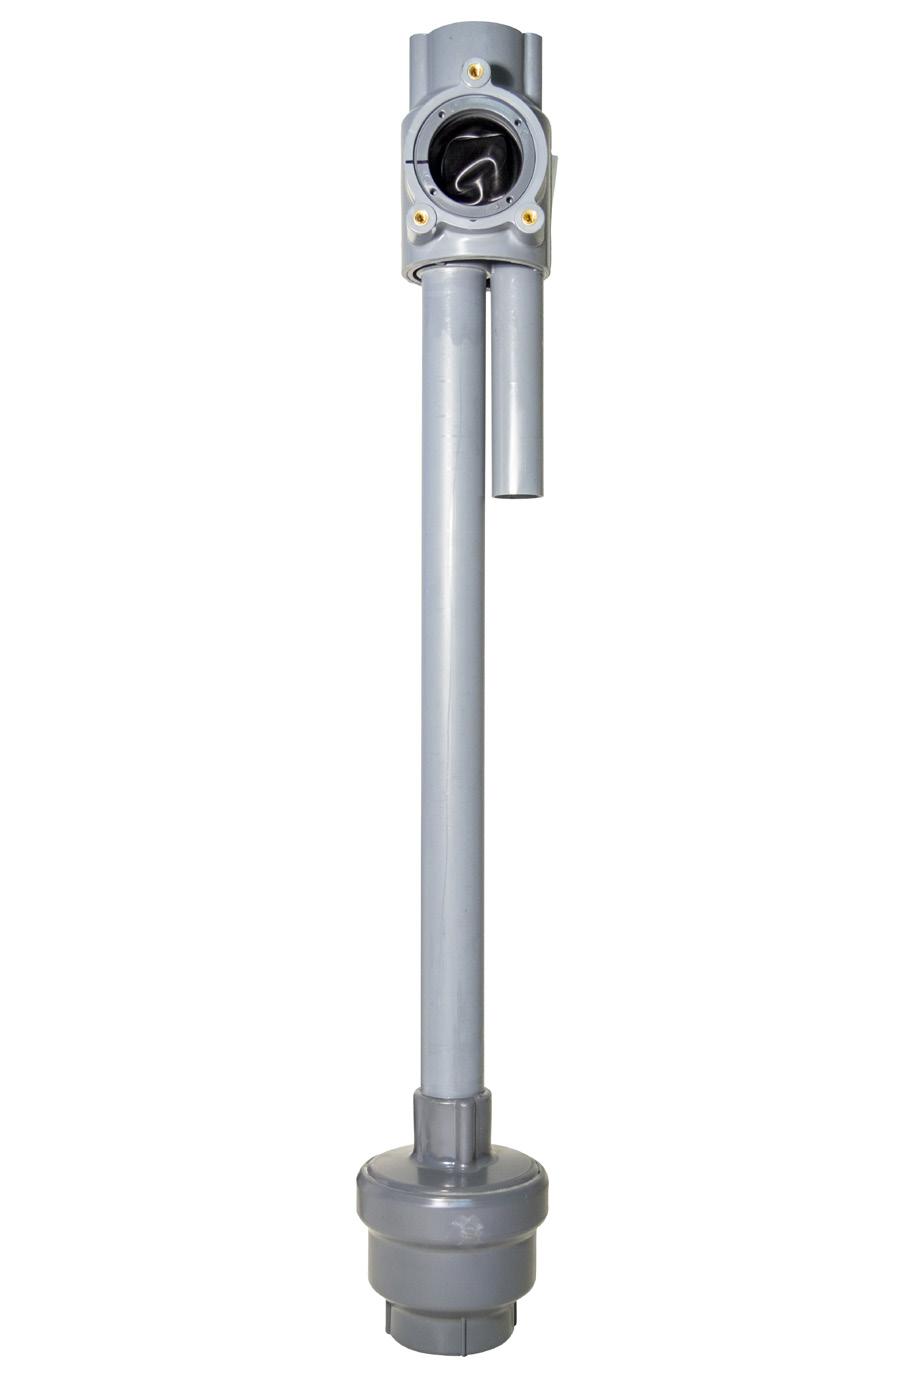 NIVÅPRO ESPS NIVÅREGLERING NivåPRO nivåreglering utan vippor BESKRIVNING PUMPTEK 3-fas pumpstationer kan utrustas med NivåPRO ESPS nivåregleringssystem.